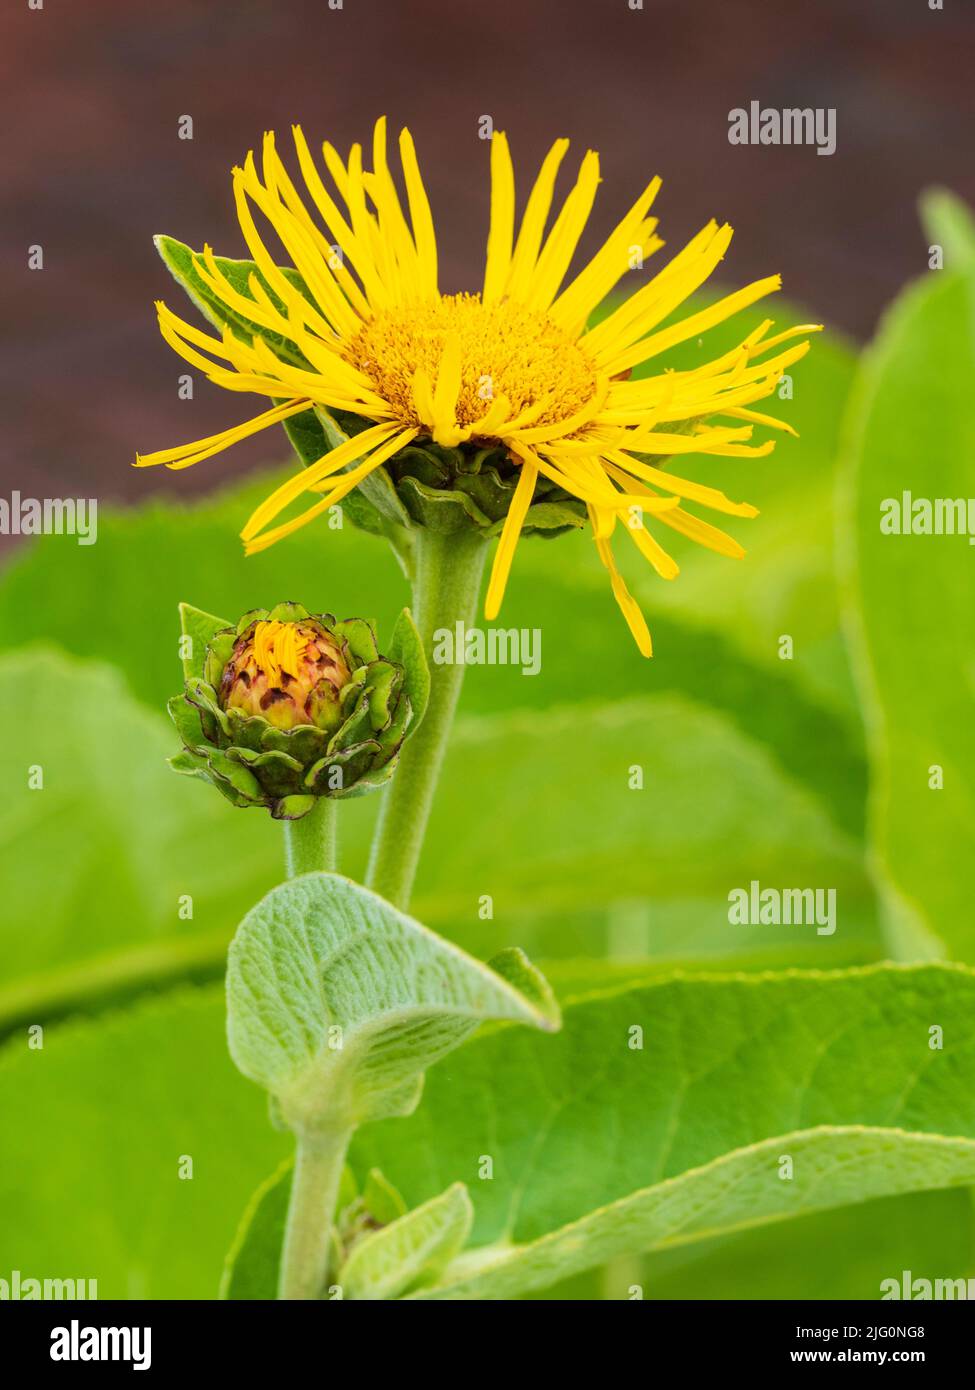 Fiore giallo brillante margherita dell'erba medicinale perenne hardy, Elecampane, Inula helenium Foto Stock